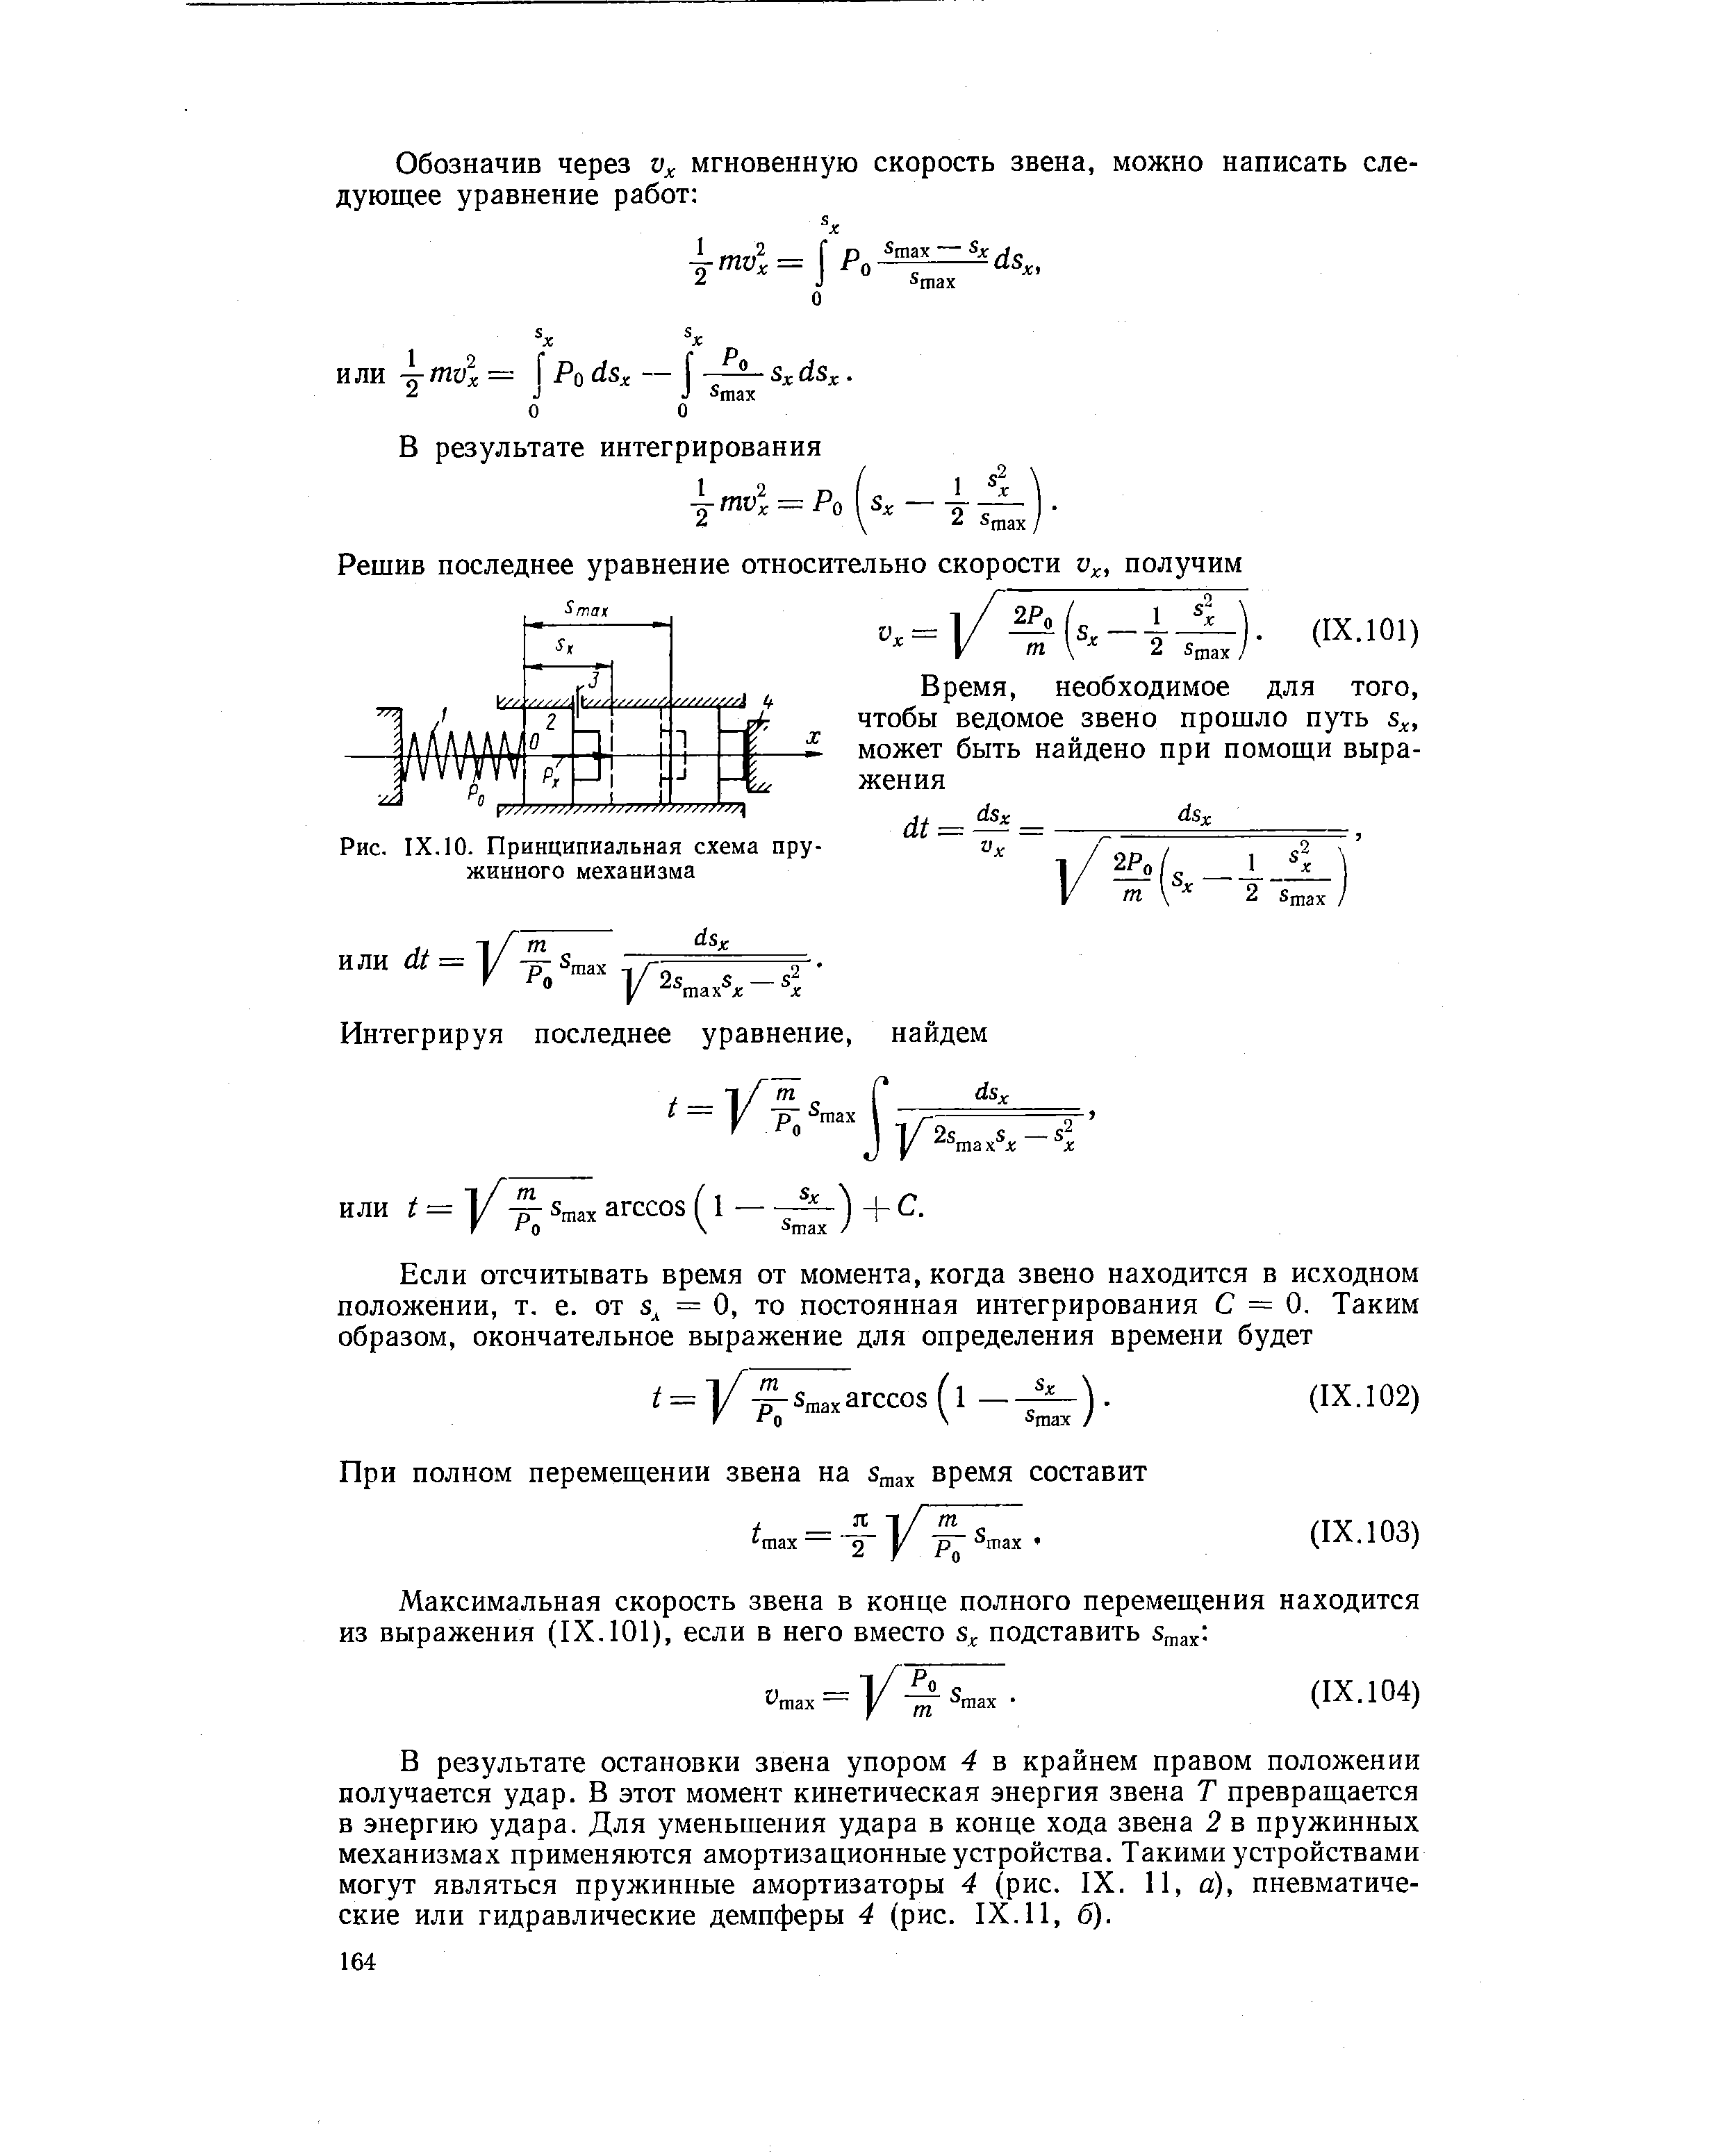 Рис. IX. 10. Принципиальная схема пружинного механизма
